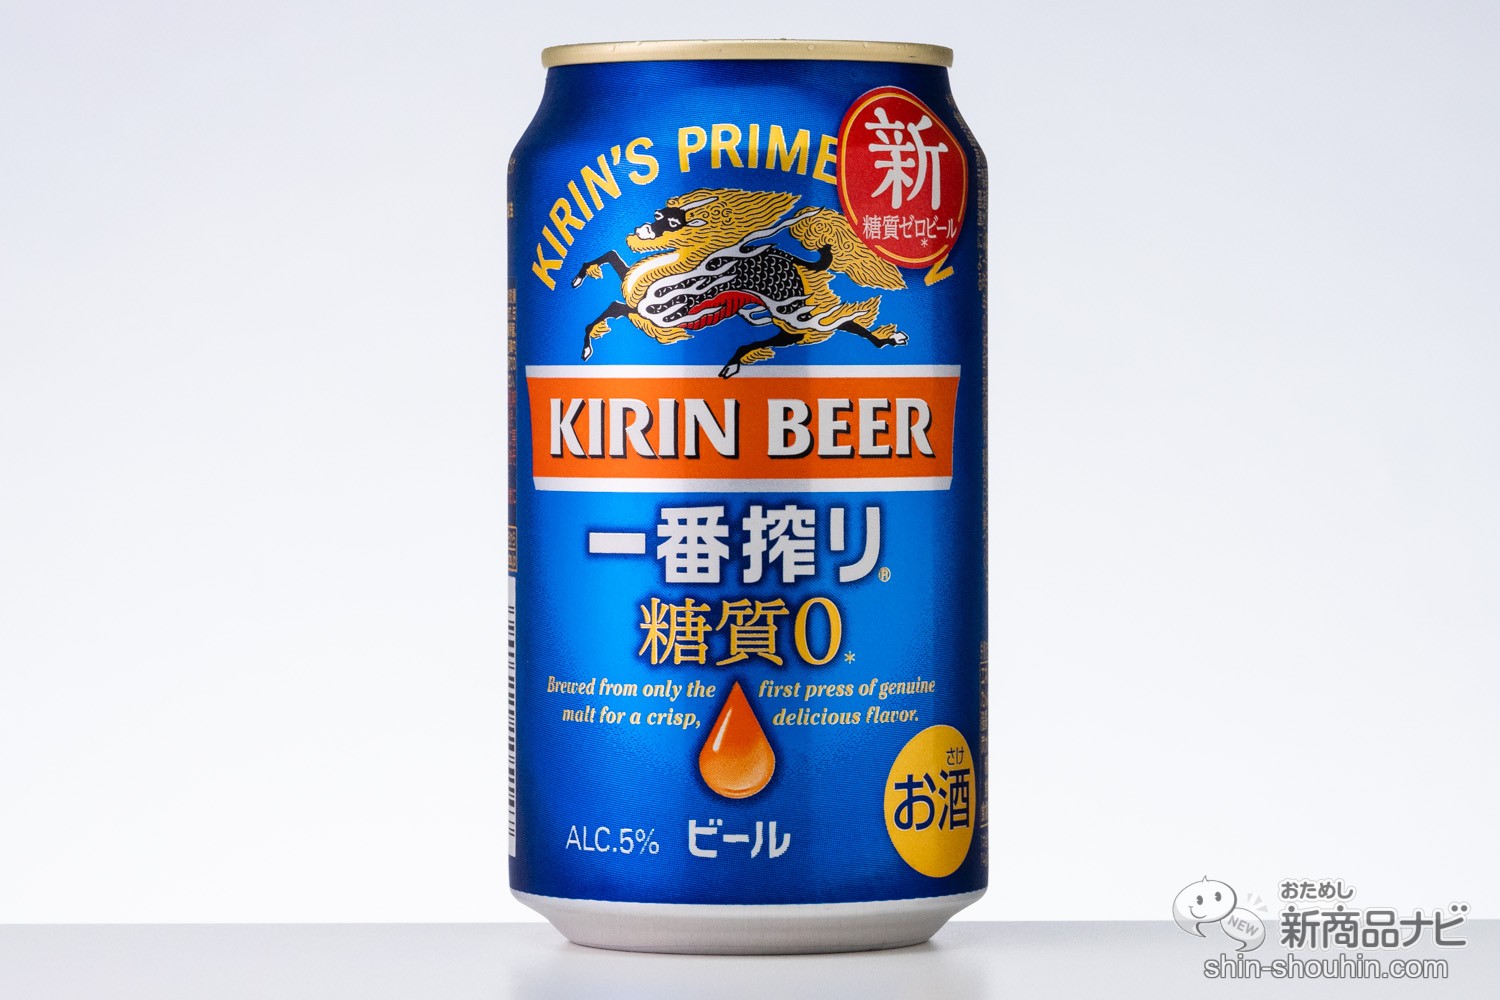 おためし新商品ナビ » Blog Archive » 【糖質ゼロビール対決】『キリン